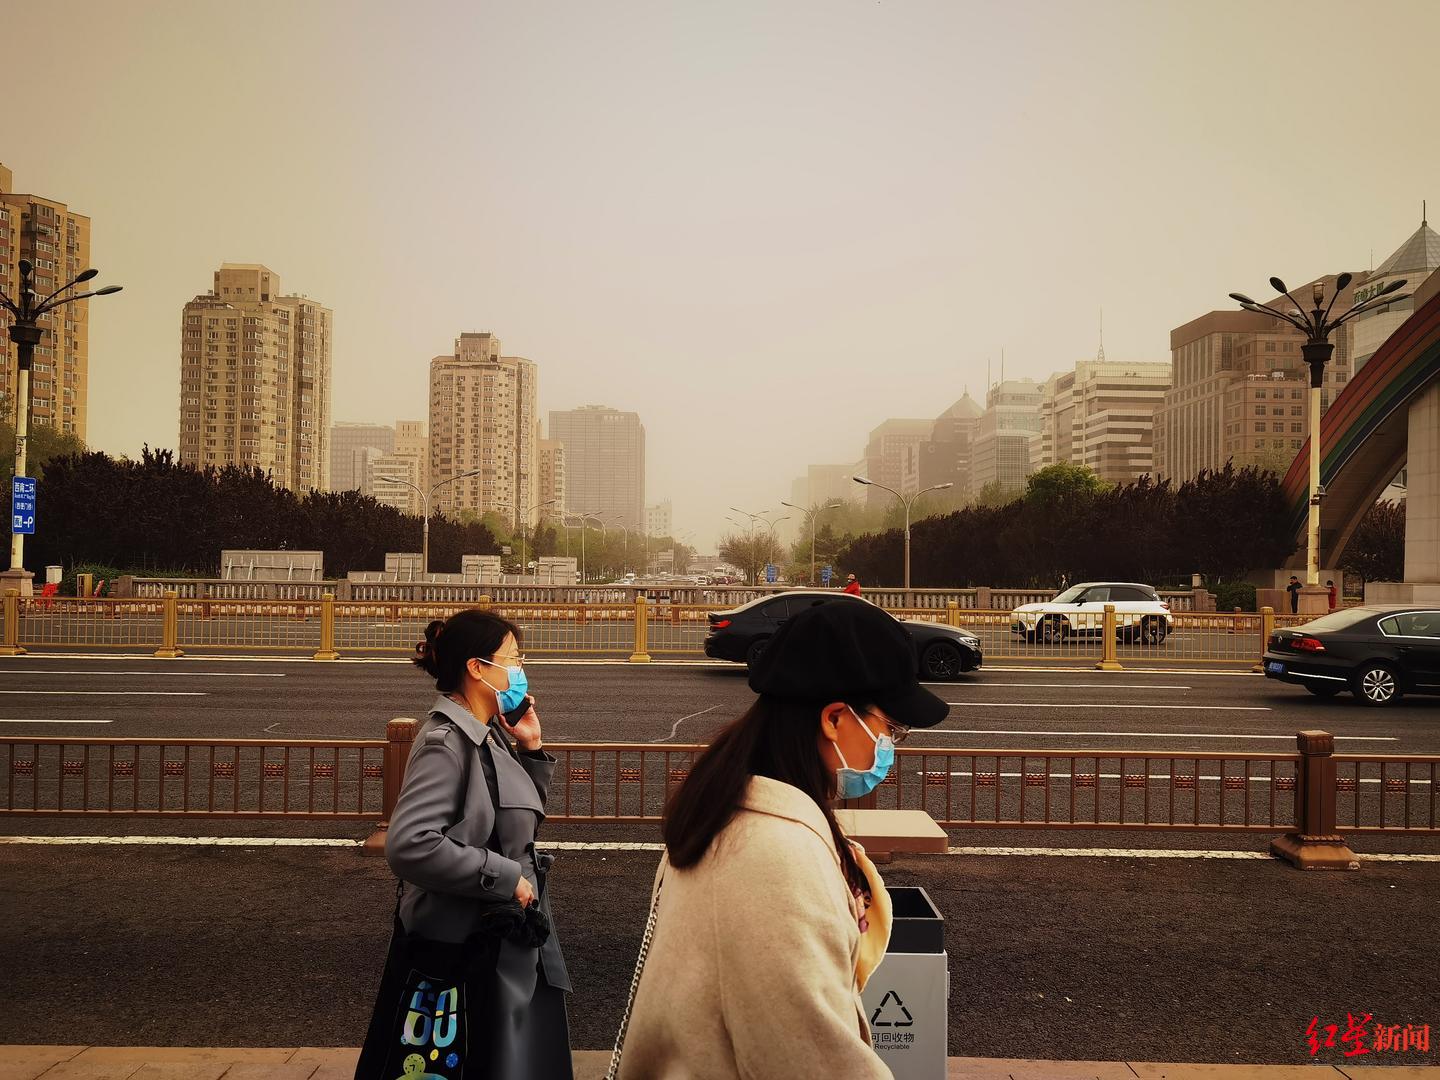 ↑北京出现大风扬沙天气 图据视觉中国